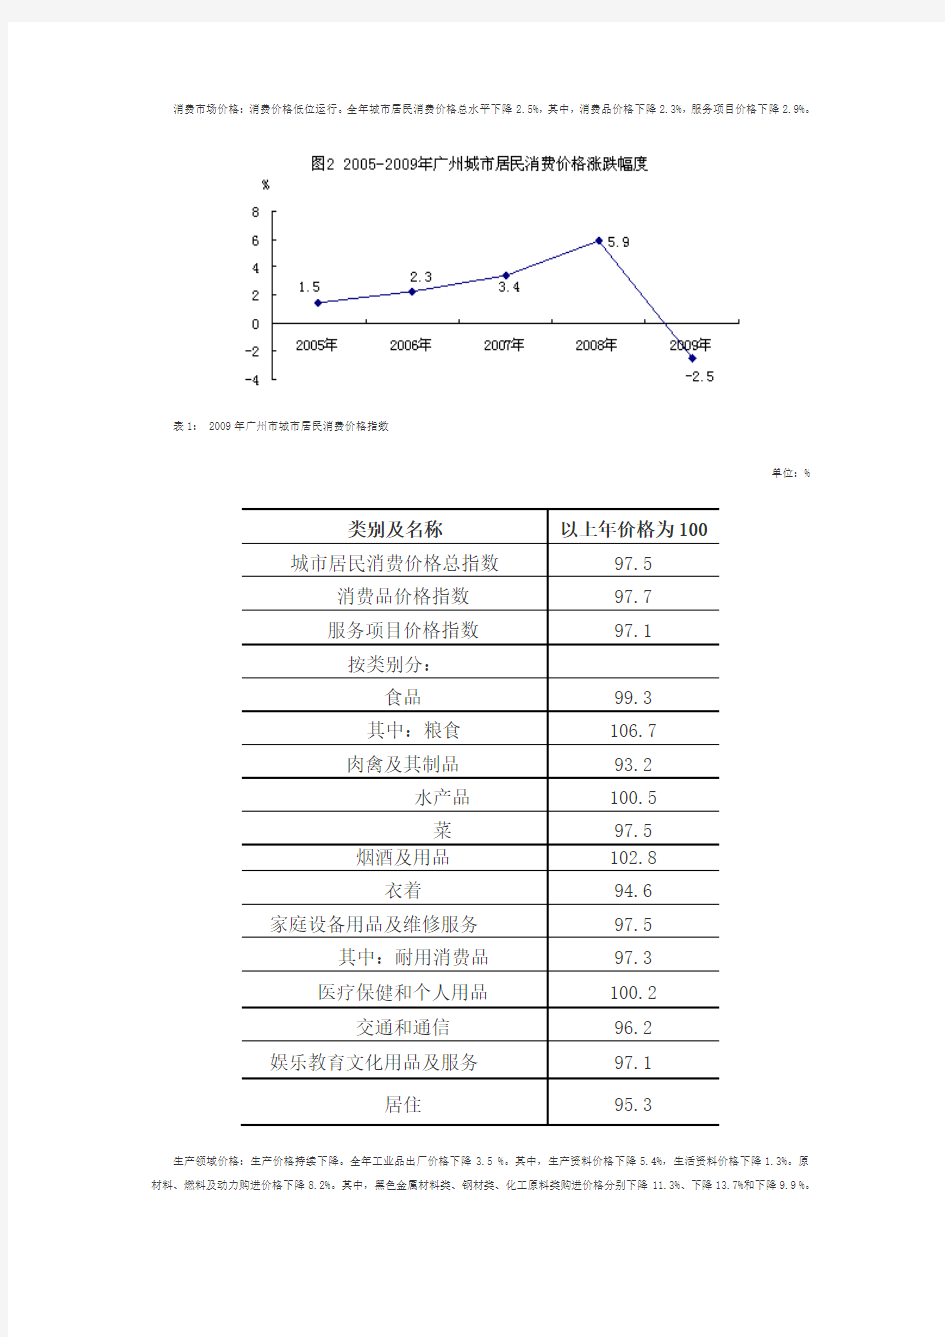 2009年广州市国民经济和社会发展统计公报